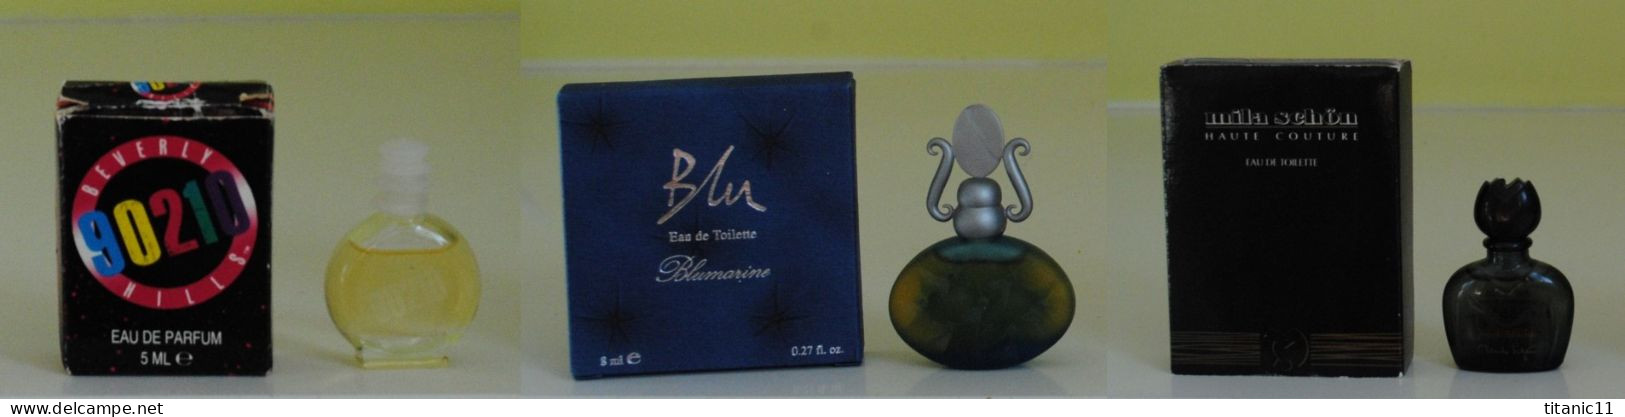 Port Gratuit - Lot De 3 Miniatures Italiennes Pour Femme (Italie) - Miniatures Womens' Fragrances (in Box)